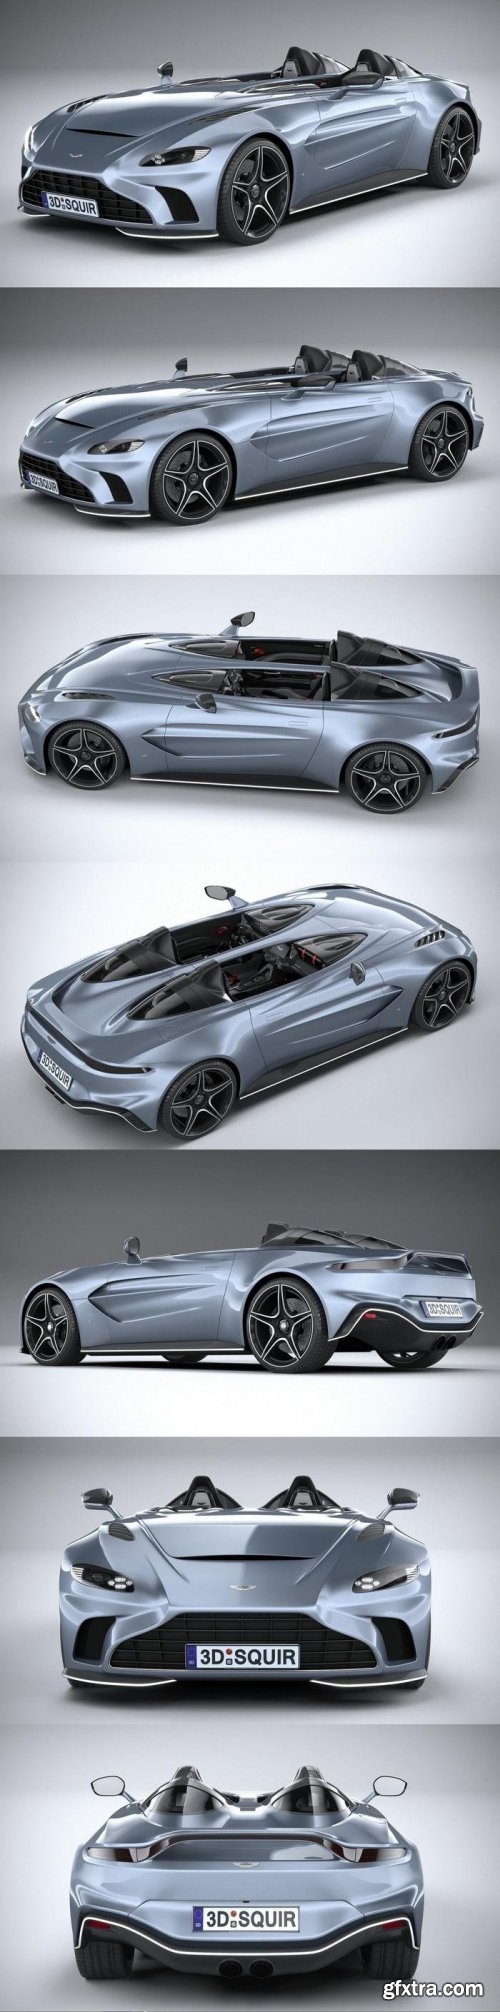 Aston Martin V12 Speedster 2021